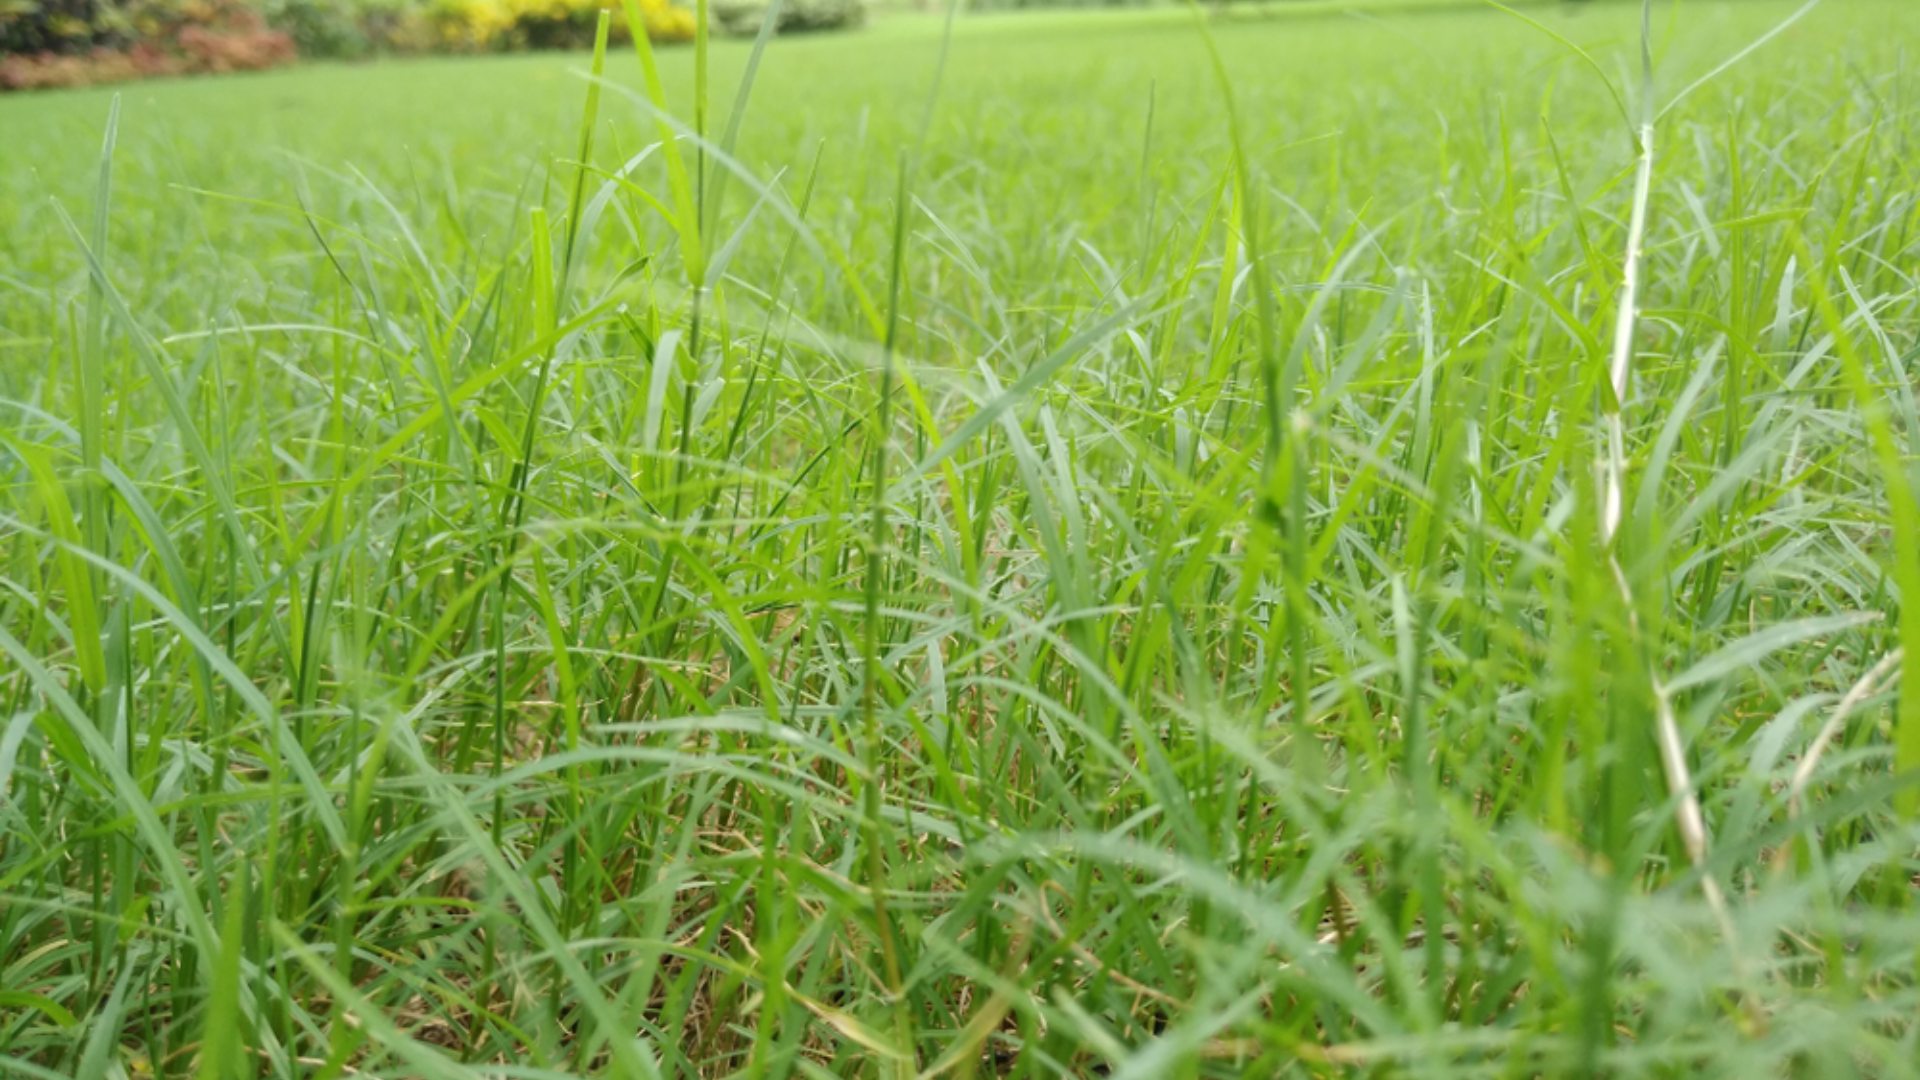 Nutsedge weed infestation in a yard in Telford, PA.